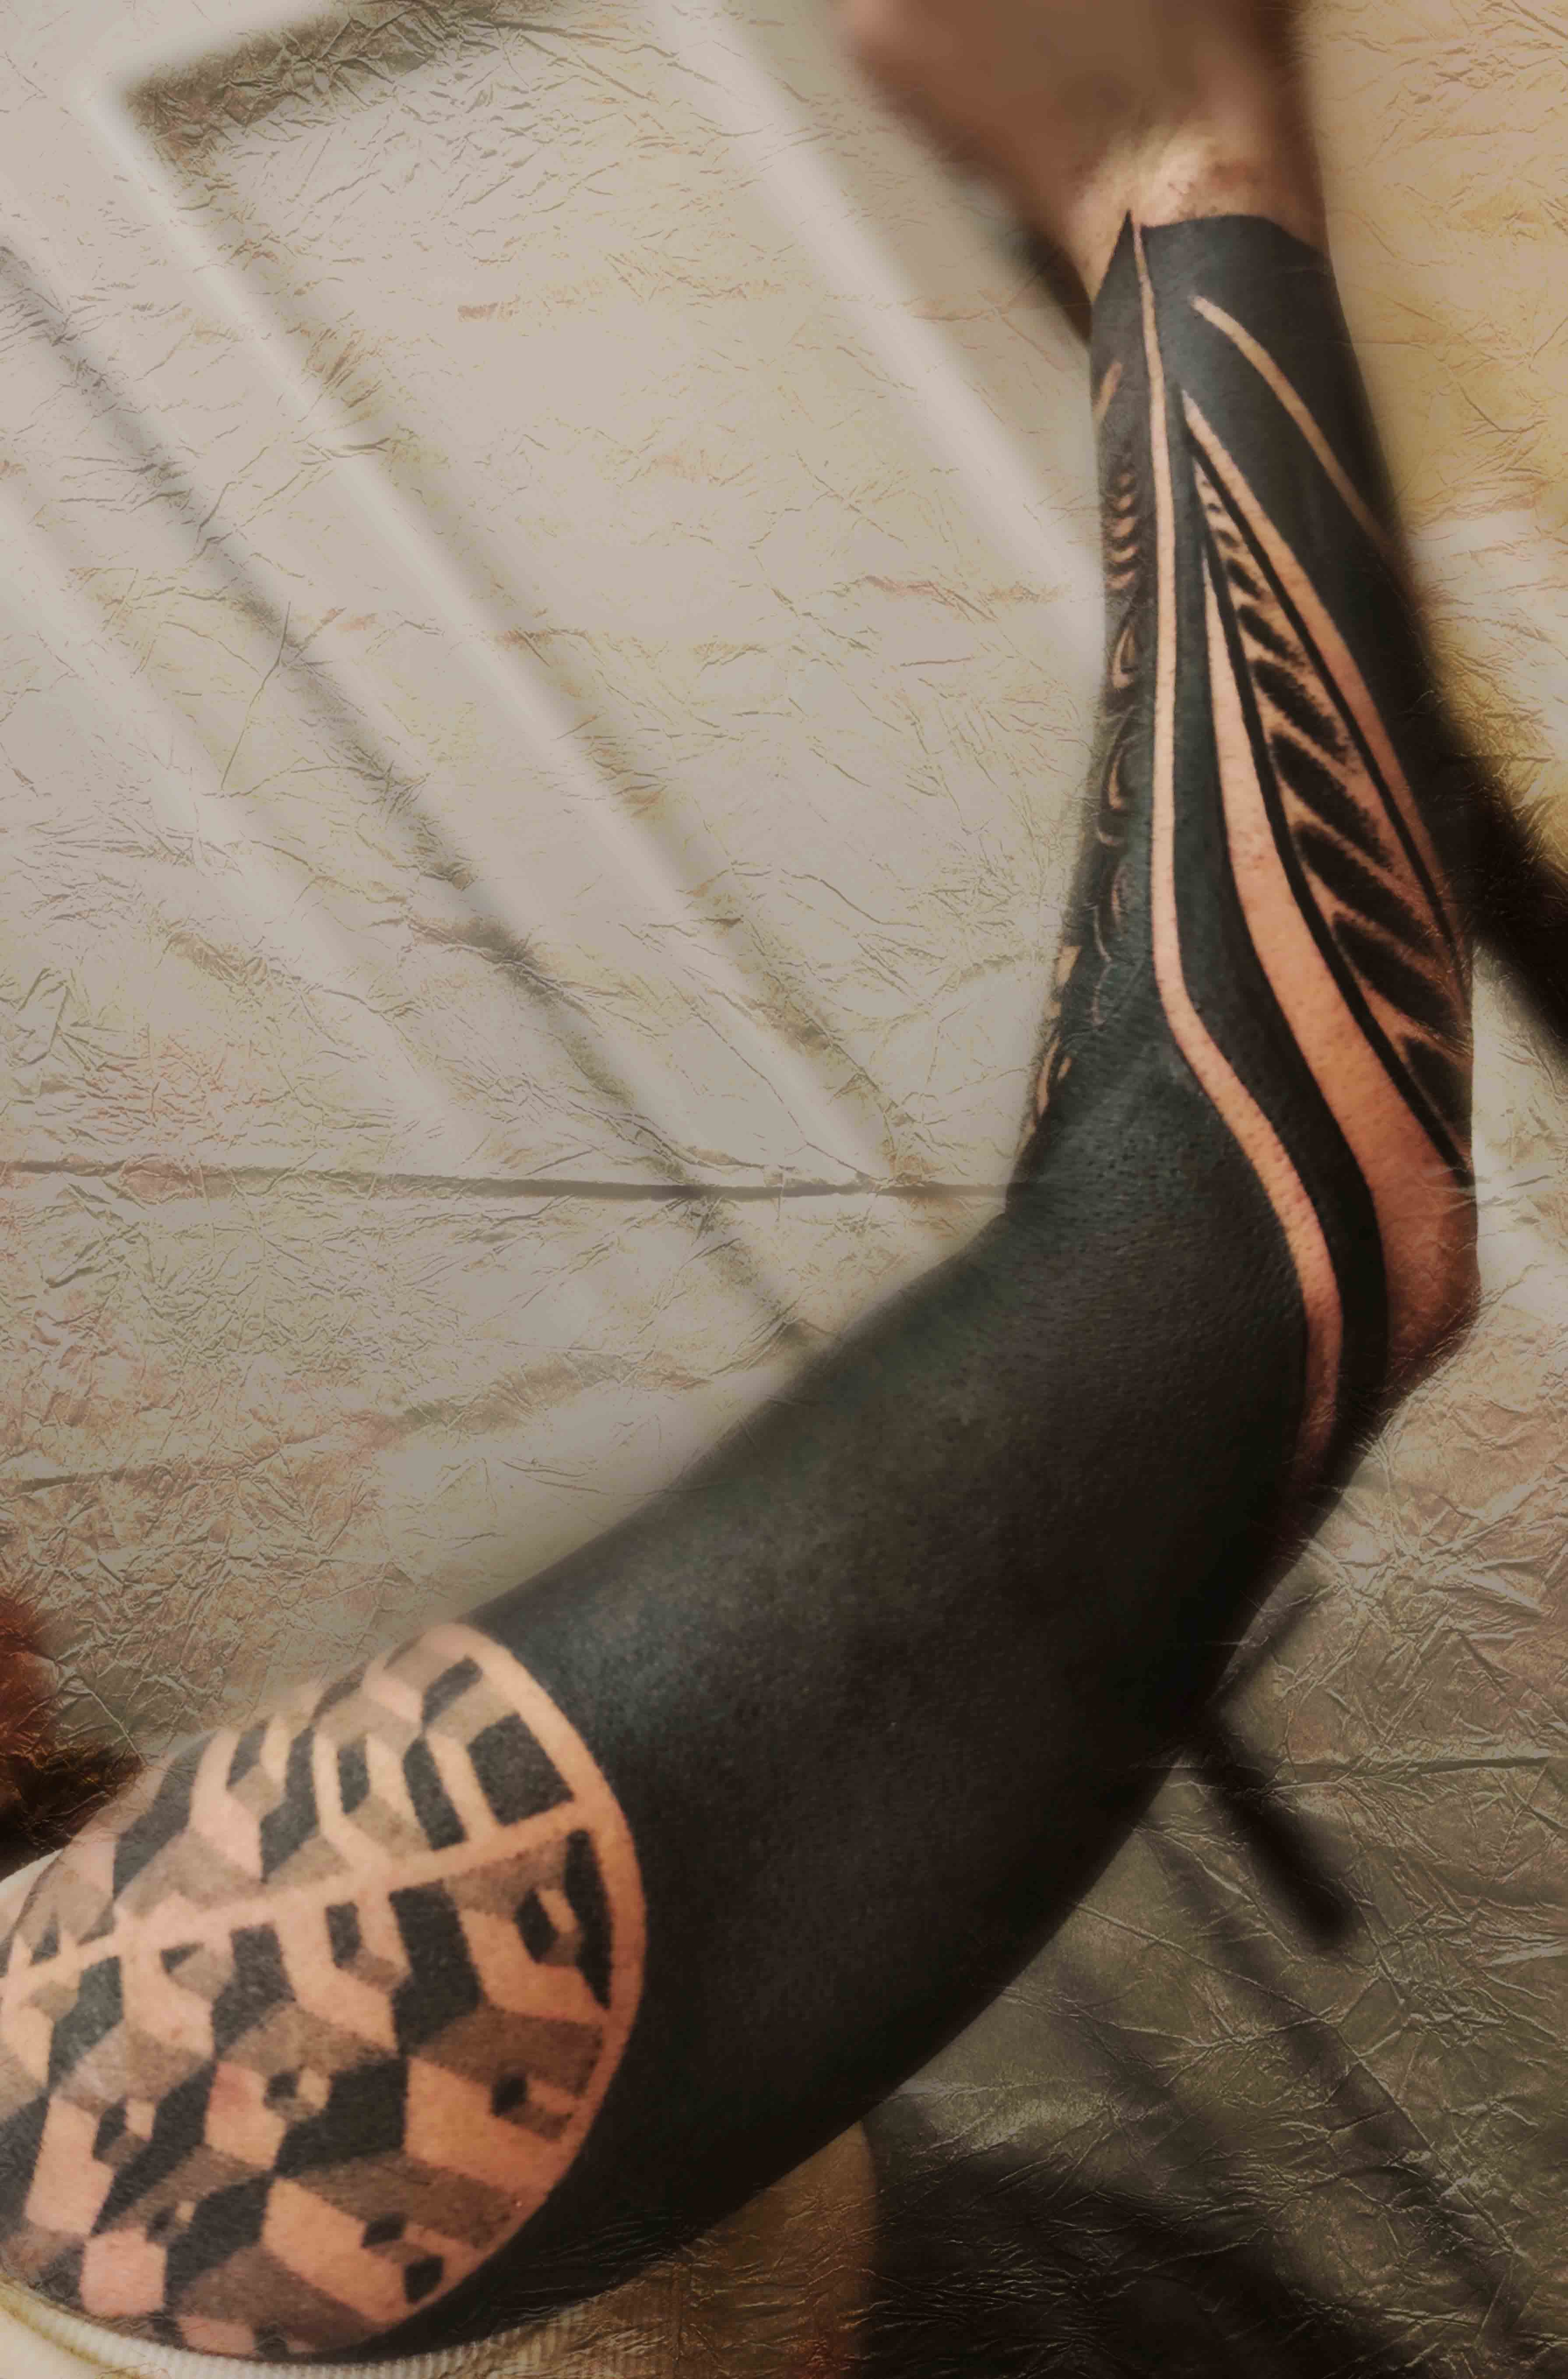 Tattoo uploaded by Lars-Erik Gråwe • #axe front leg • Tattoodo